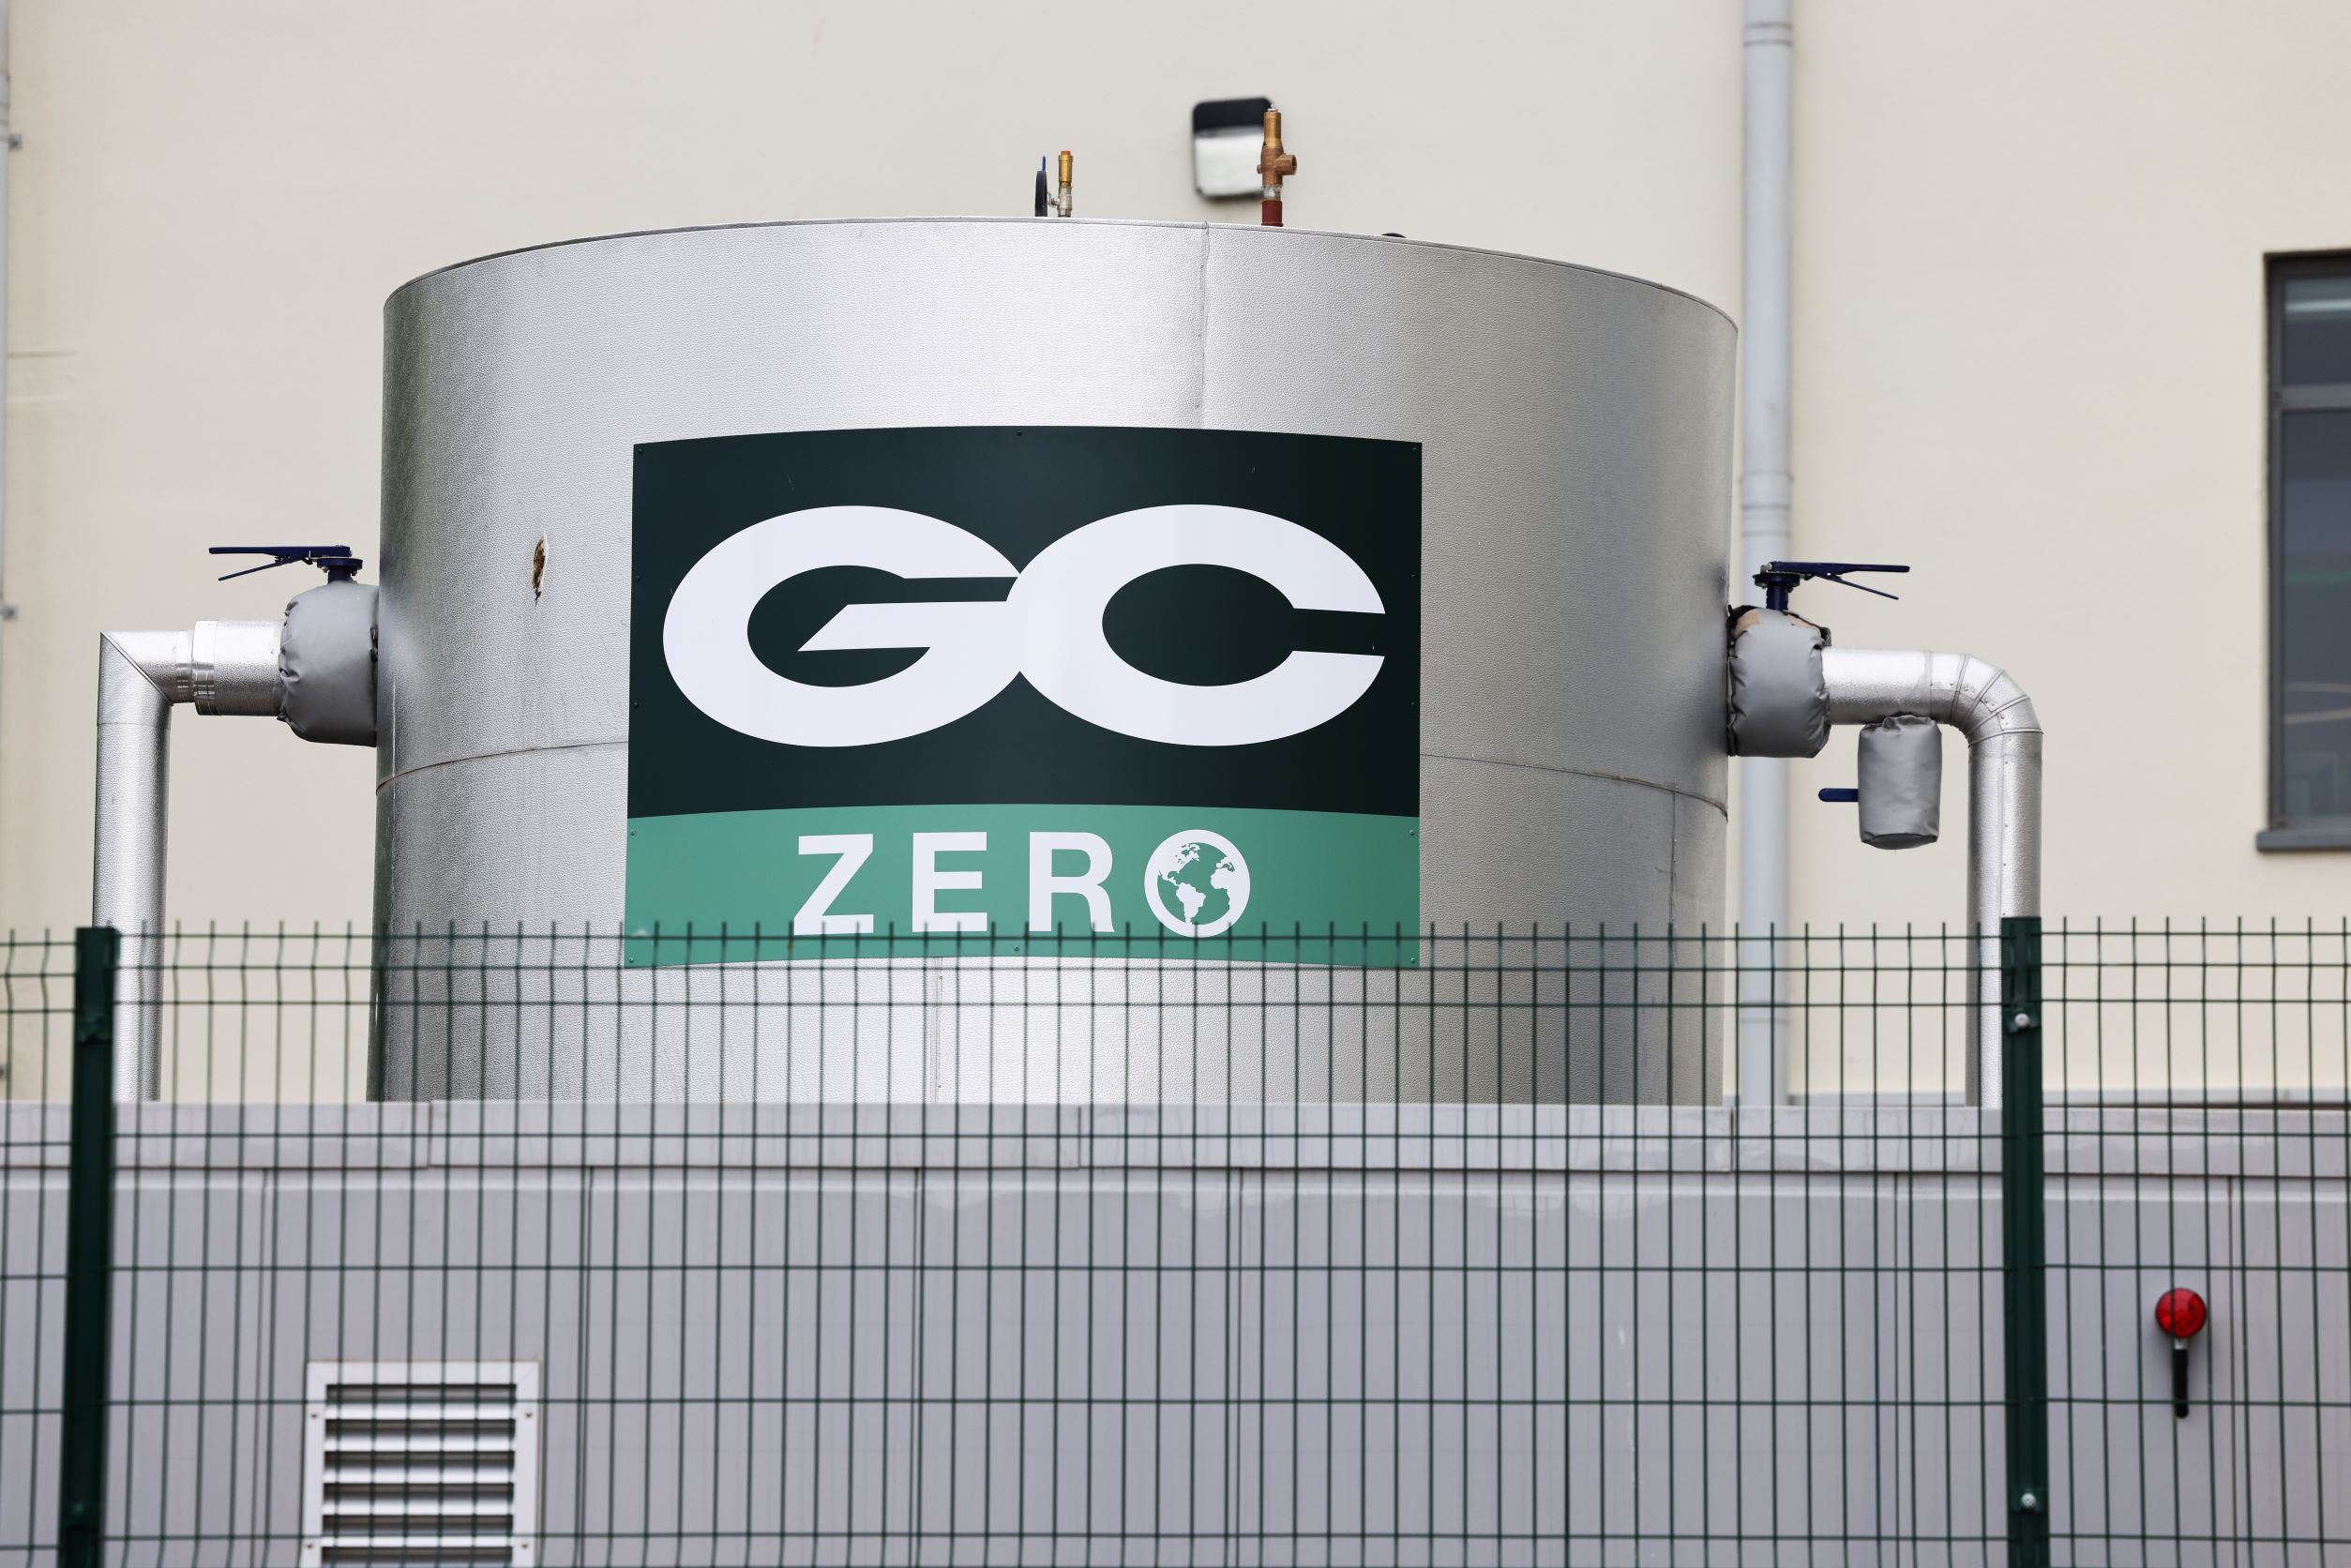 GC Zero battery storage in Gloucester Car Park WEB.JPG